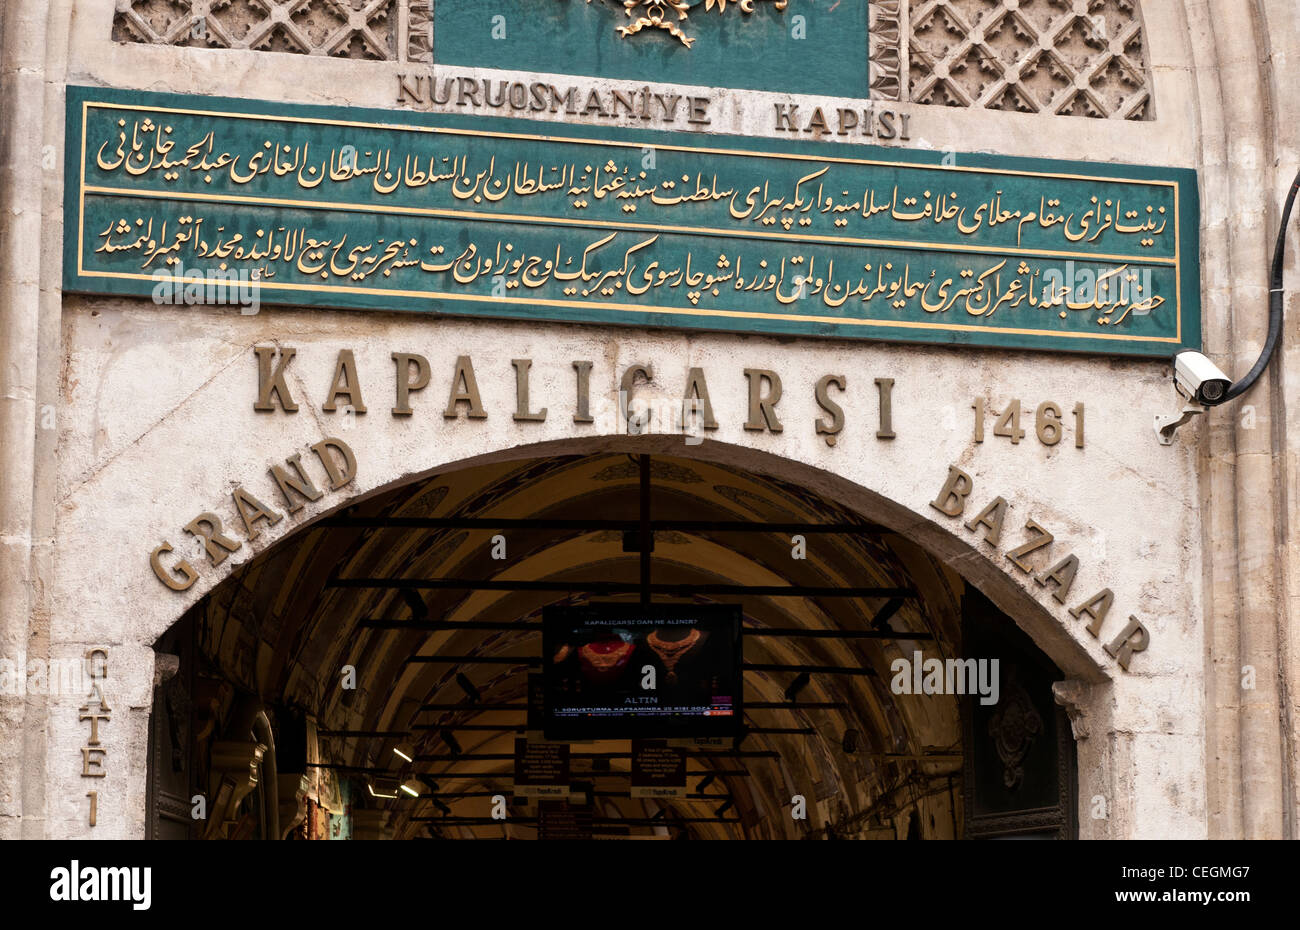 Nuruosmaniye Gate, Grand Bazaar, Beyazit, Istanbul, Turkey Stock Photo